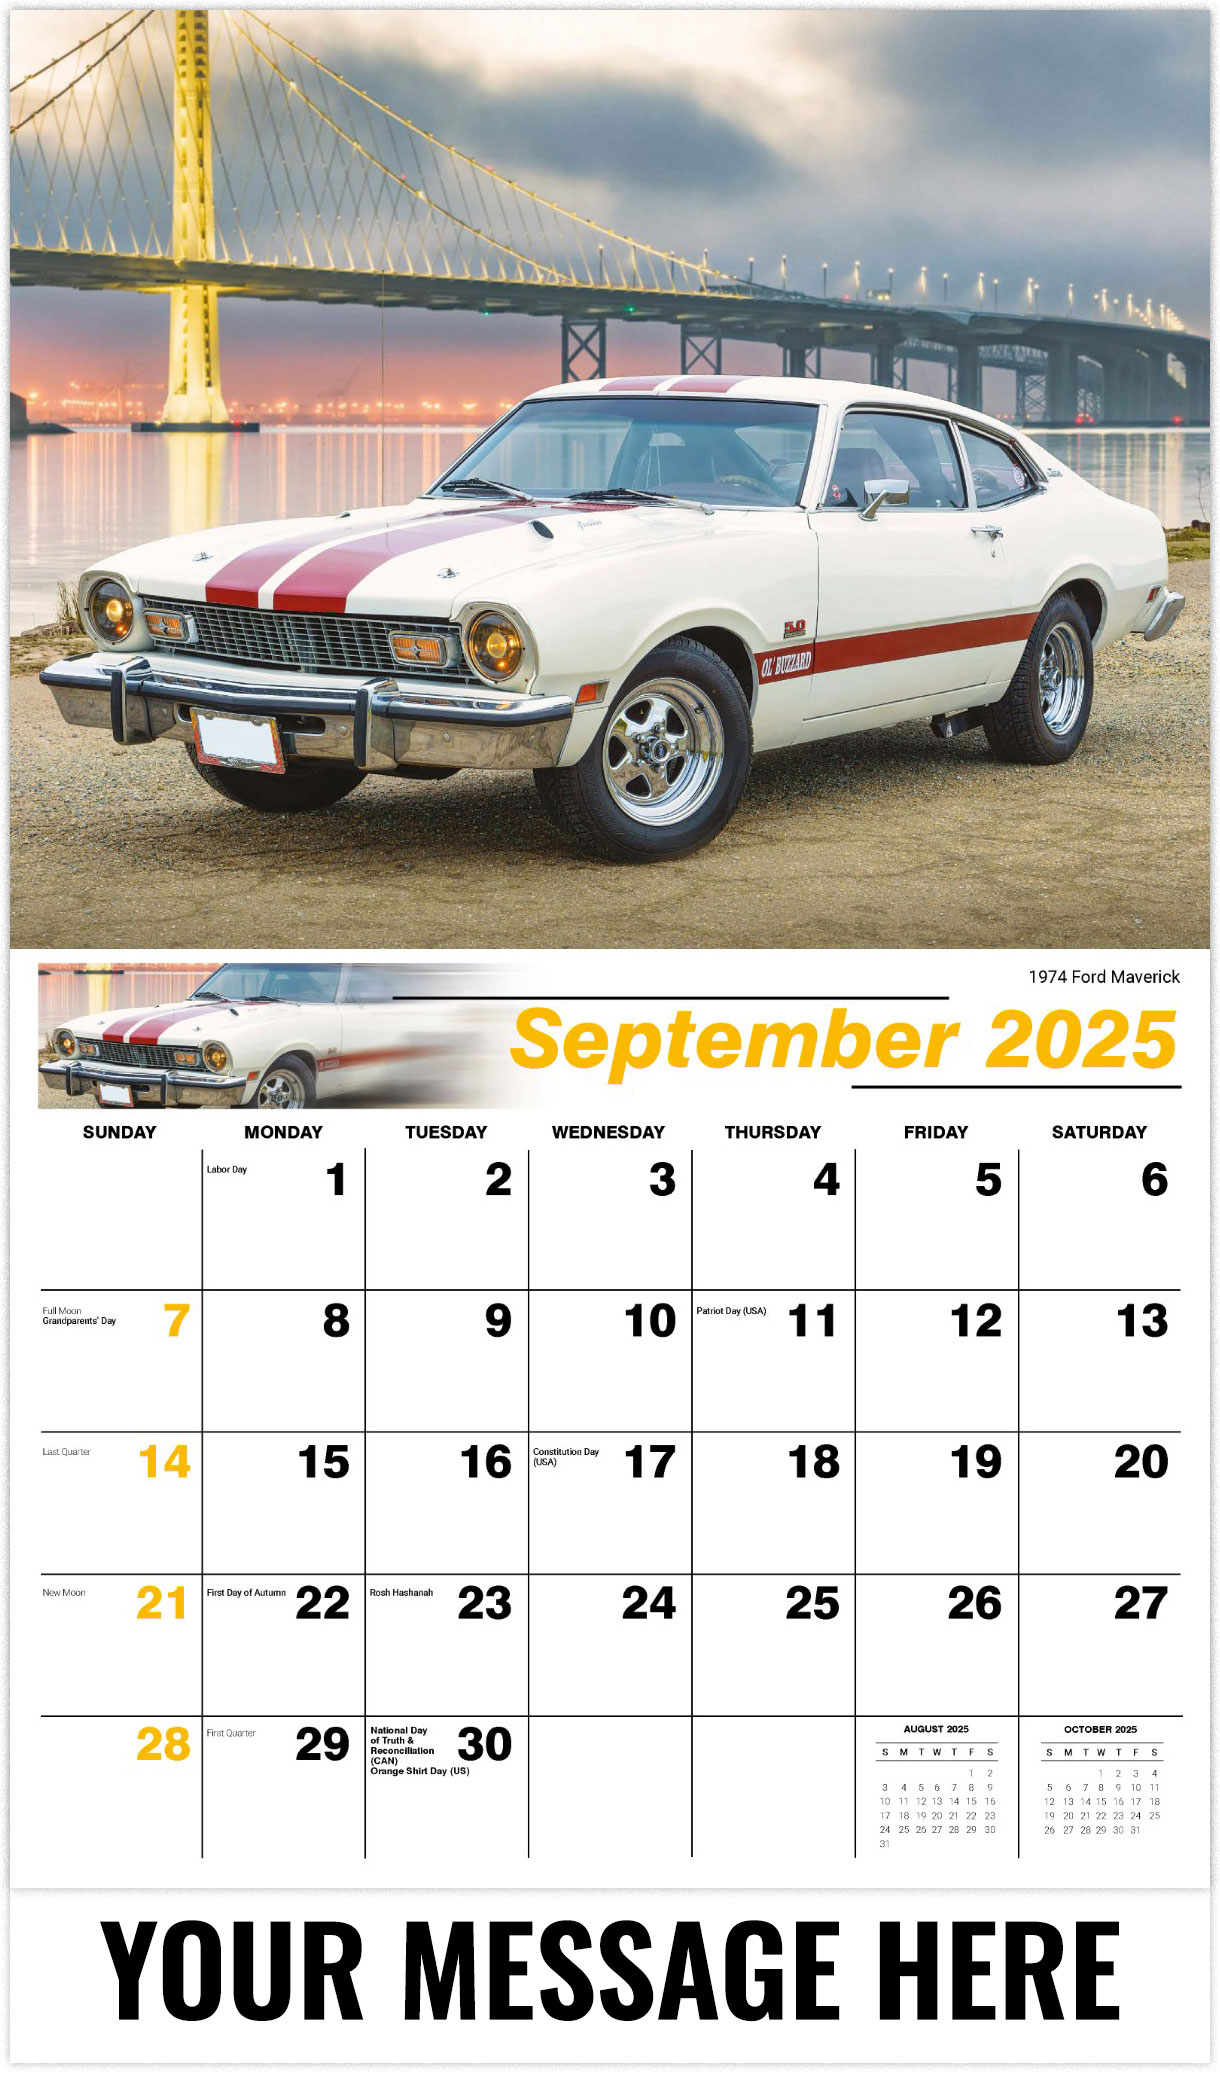 Galleria Classic Car - 2025